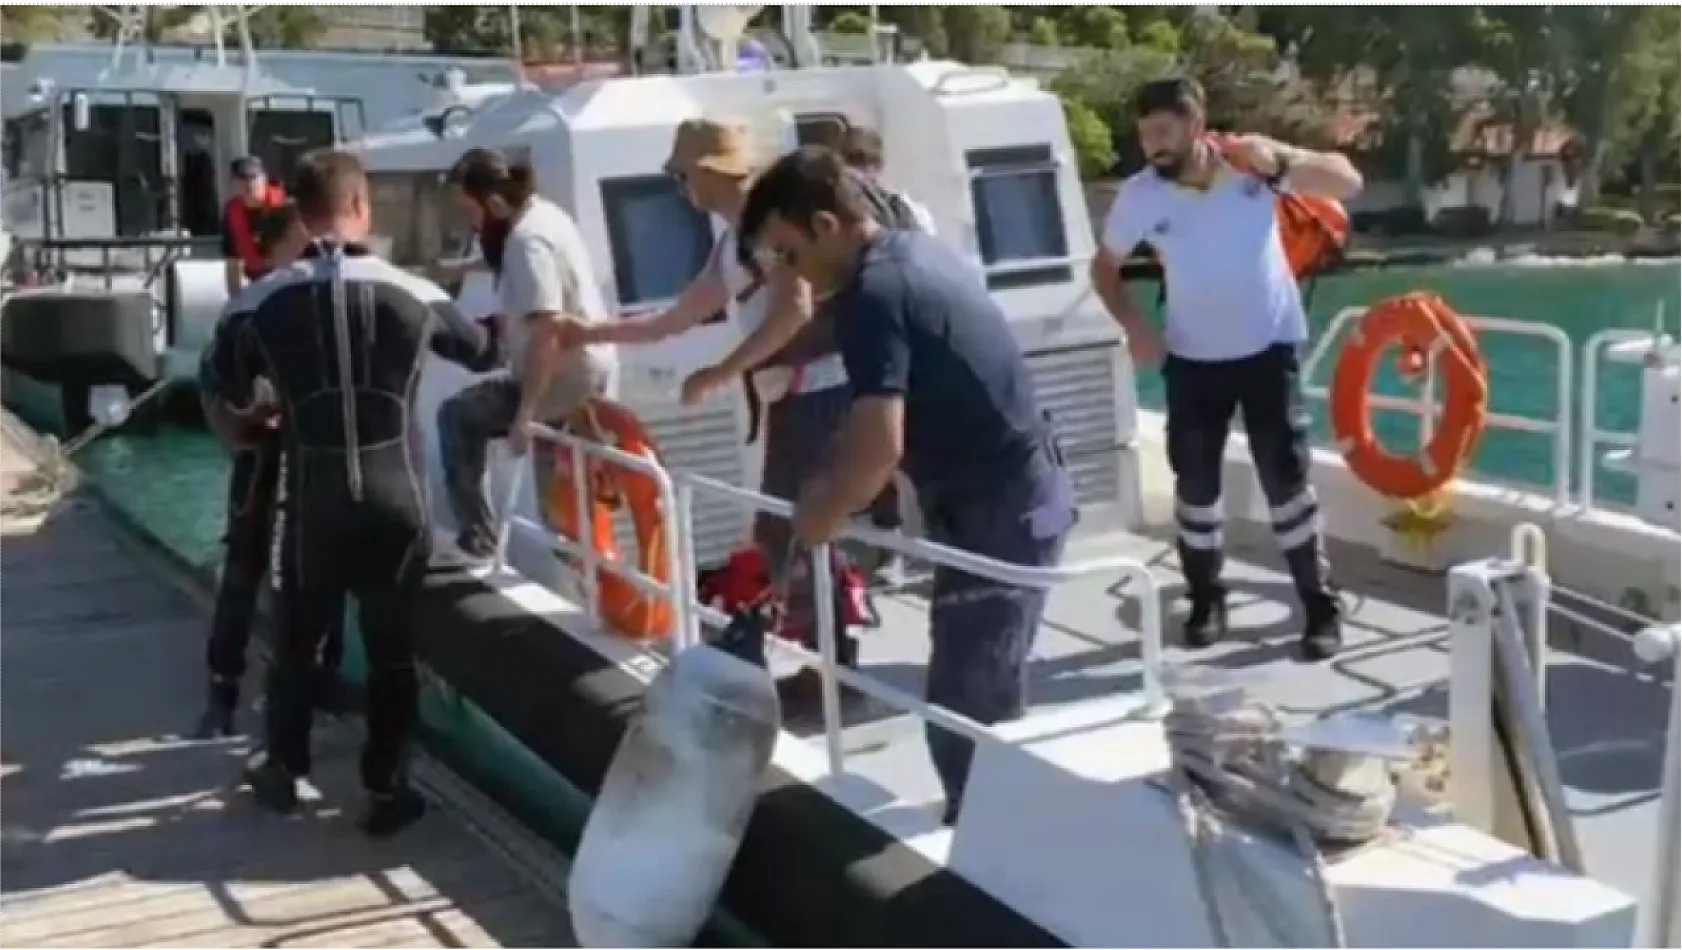 Boğulma tehlikesi yaşayan vatandaşa Sahil Güvenlikten tıbbi tahliye